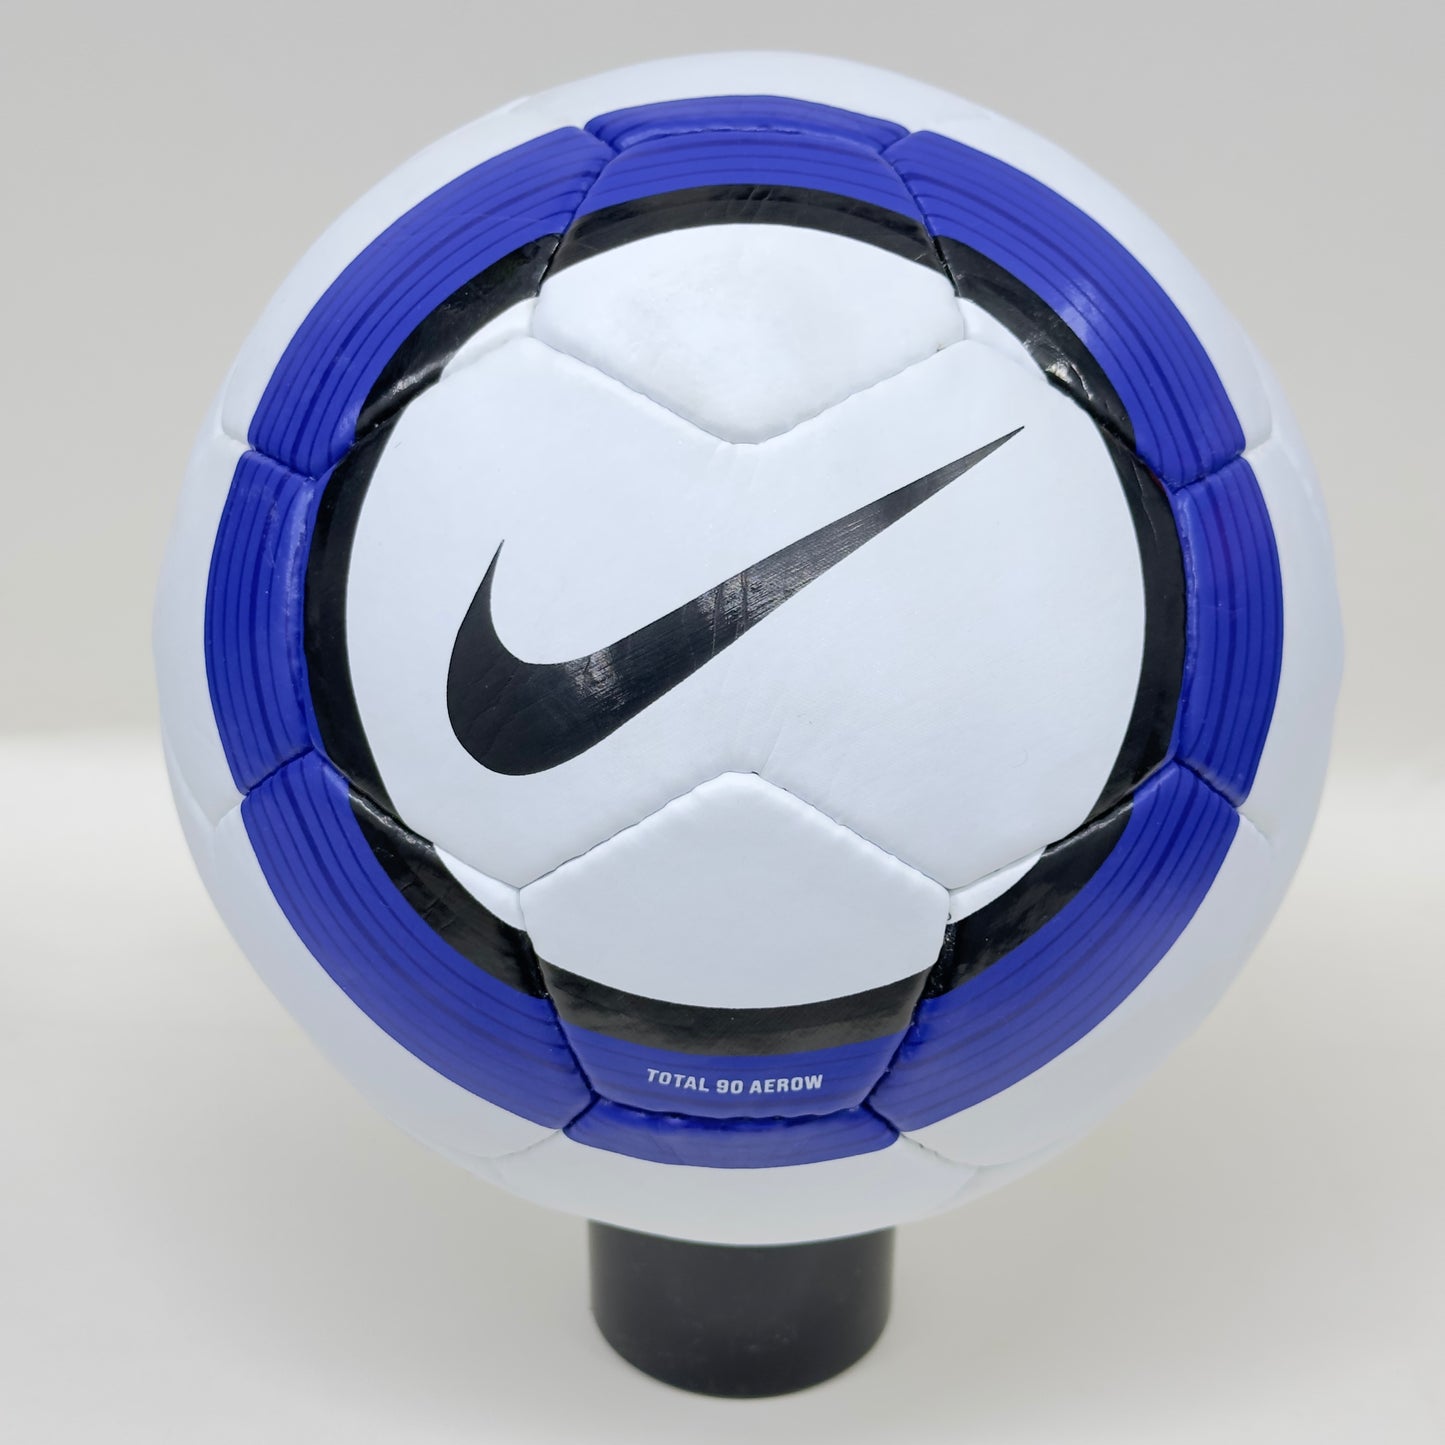 Nike Total 90 Aerow 1 | The FA Premier League l 2004-05 | Size 5 02